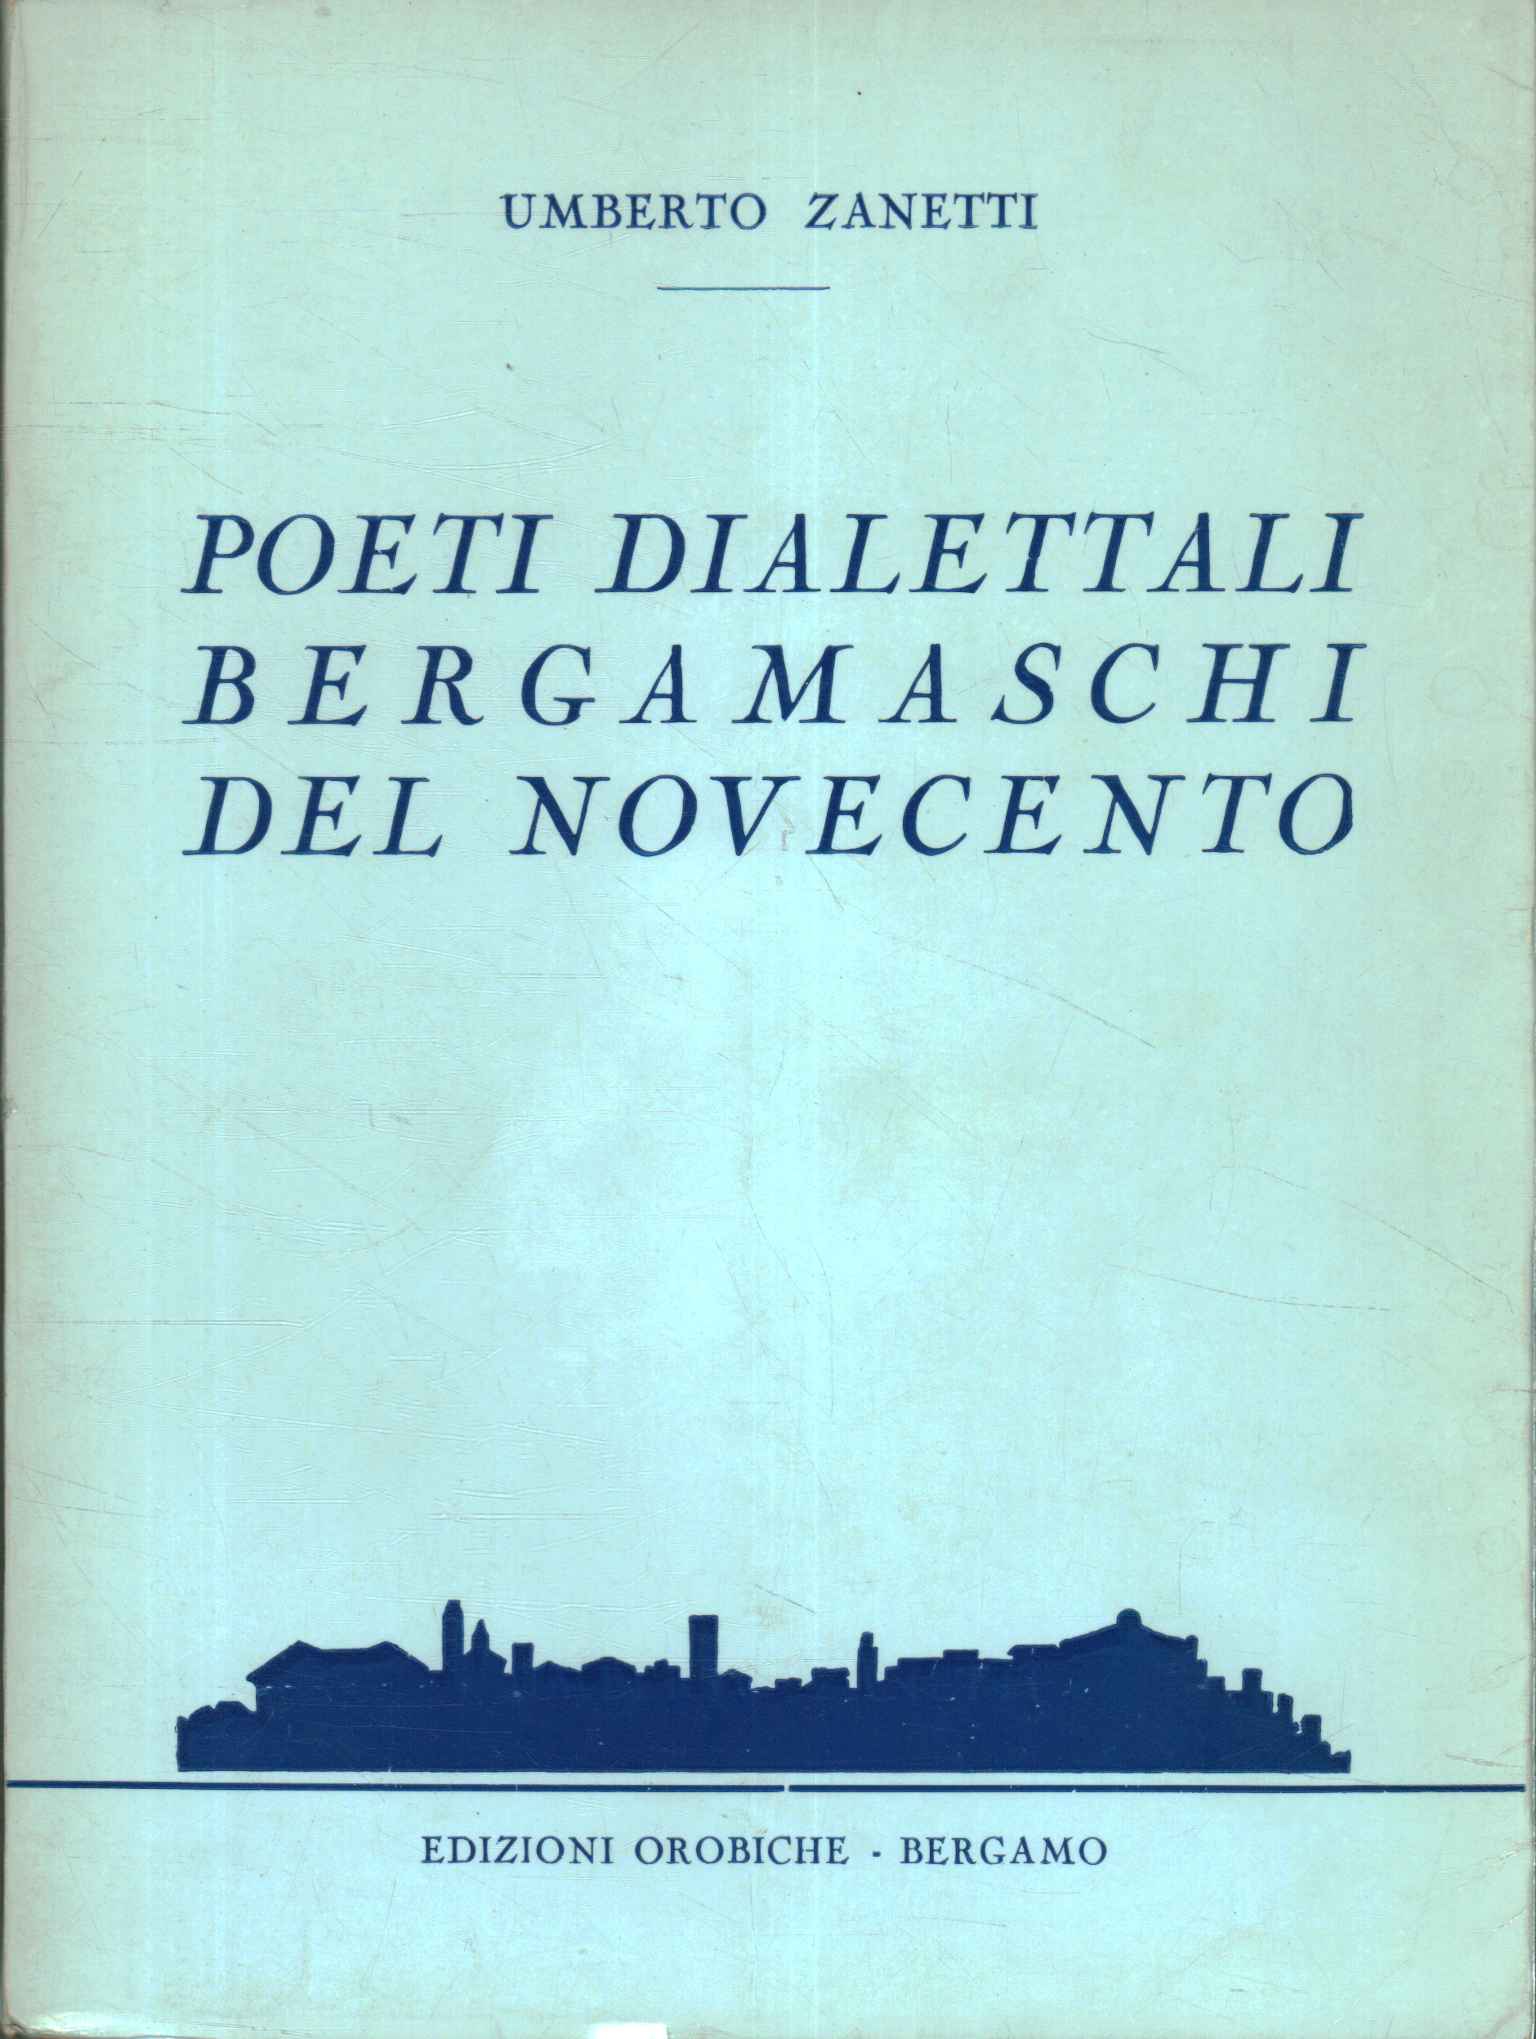 Bergamo dialect poets of the twentieth century